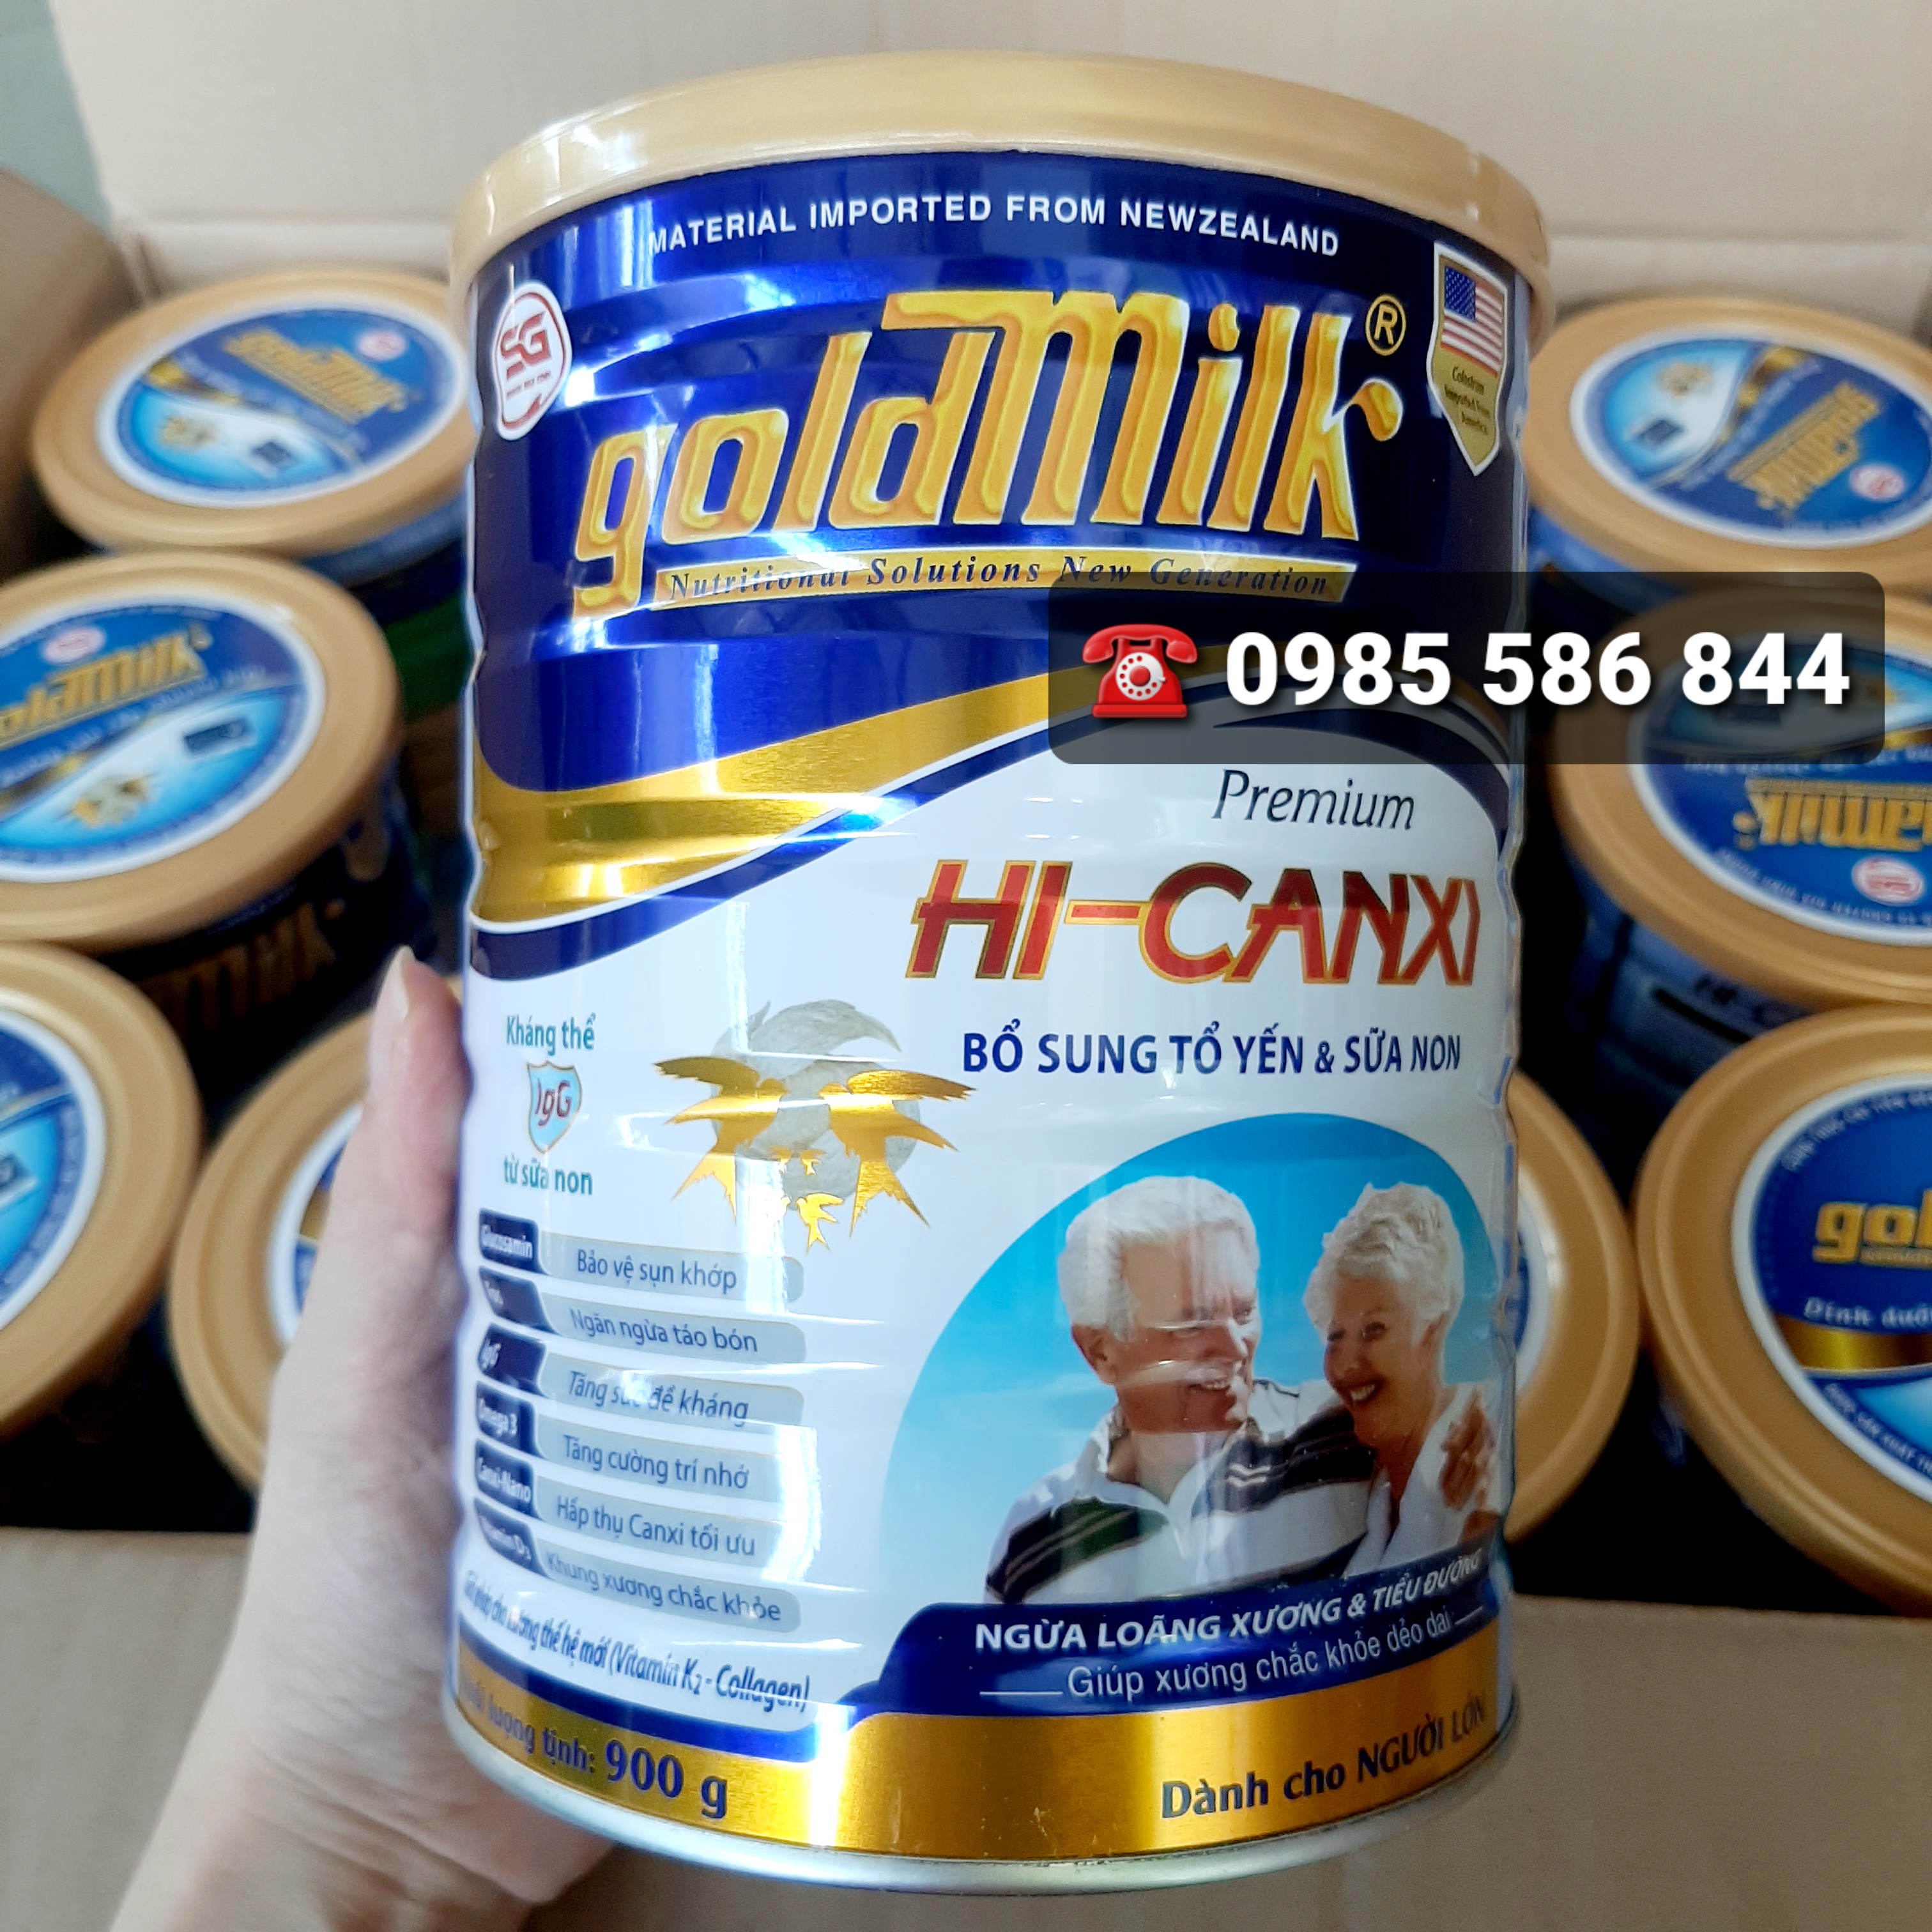 sữa cho người già ngăn ngừa loãng xương và tiểu đường - sữa bột goldmilk hi-canxi 900g - sữa dành cho người già 3